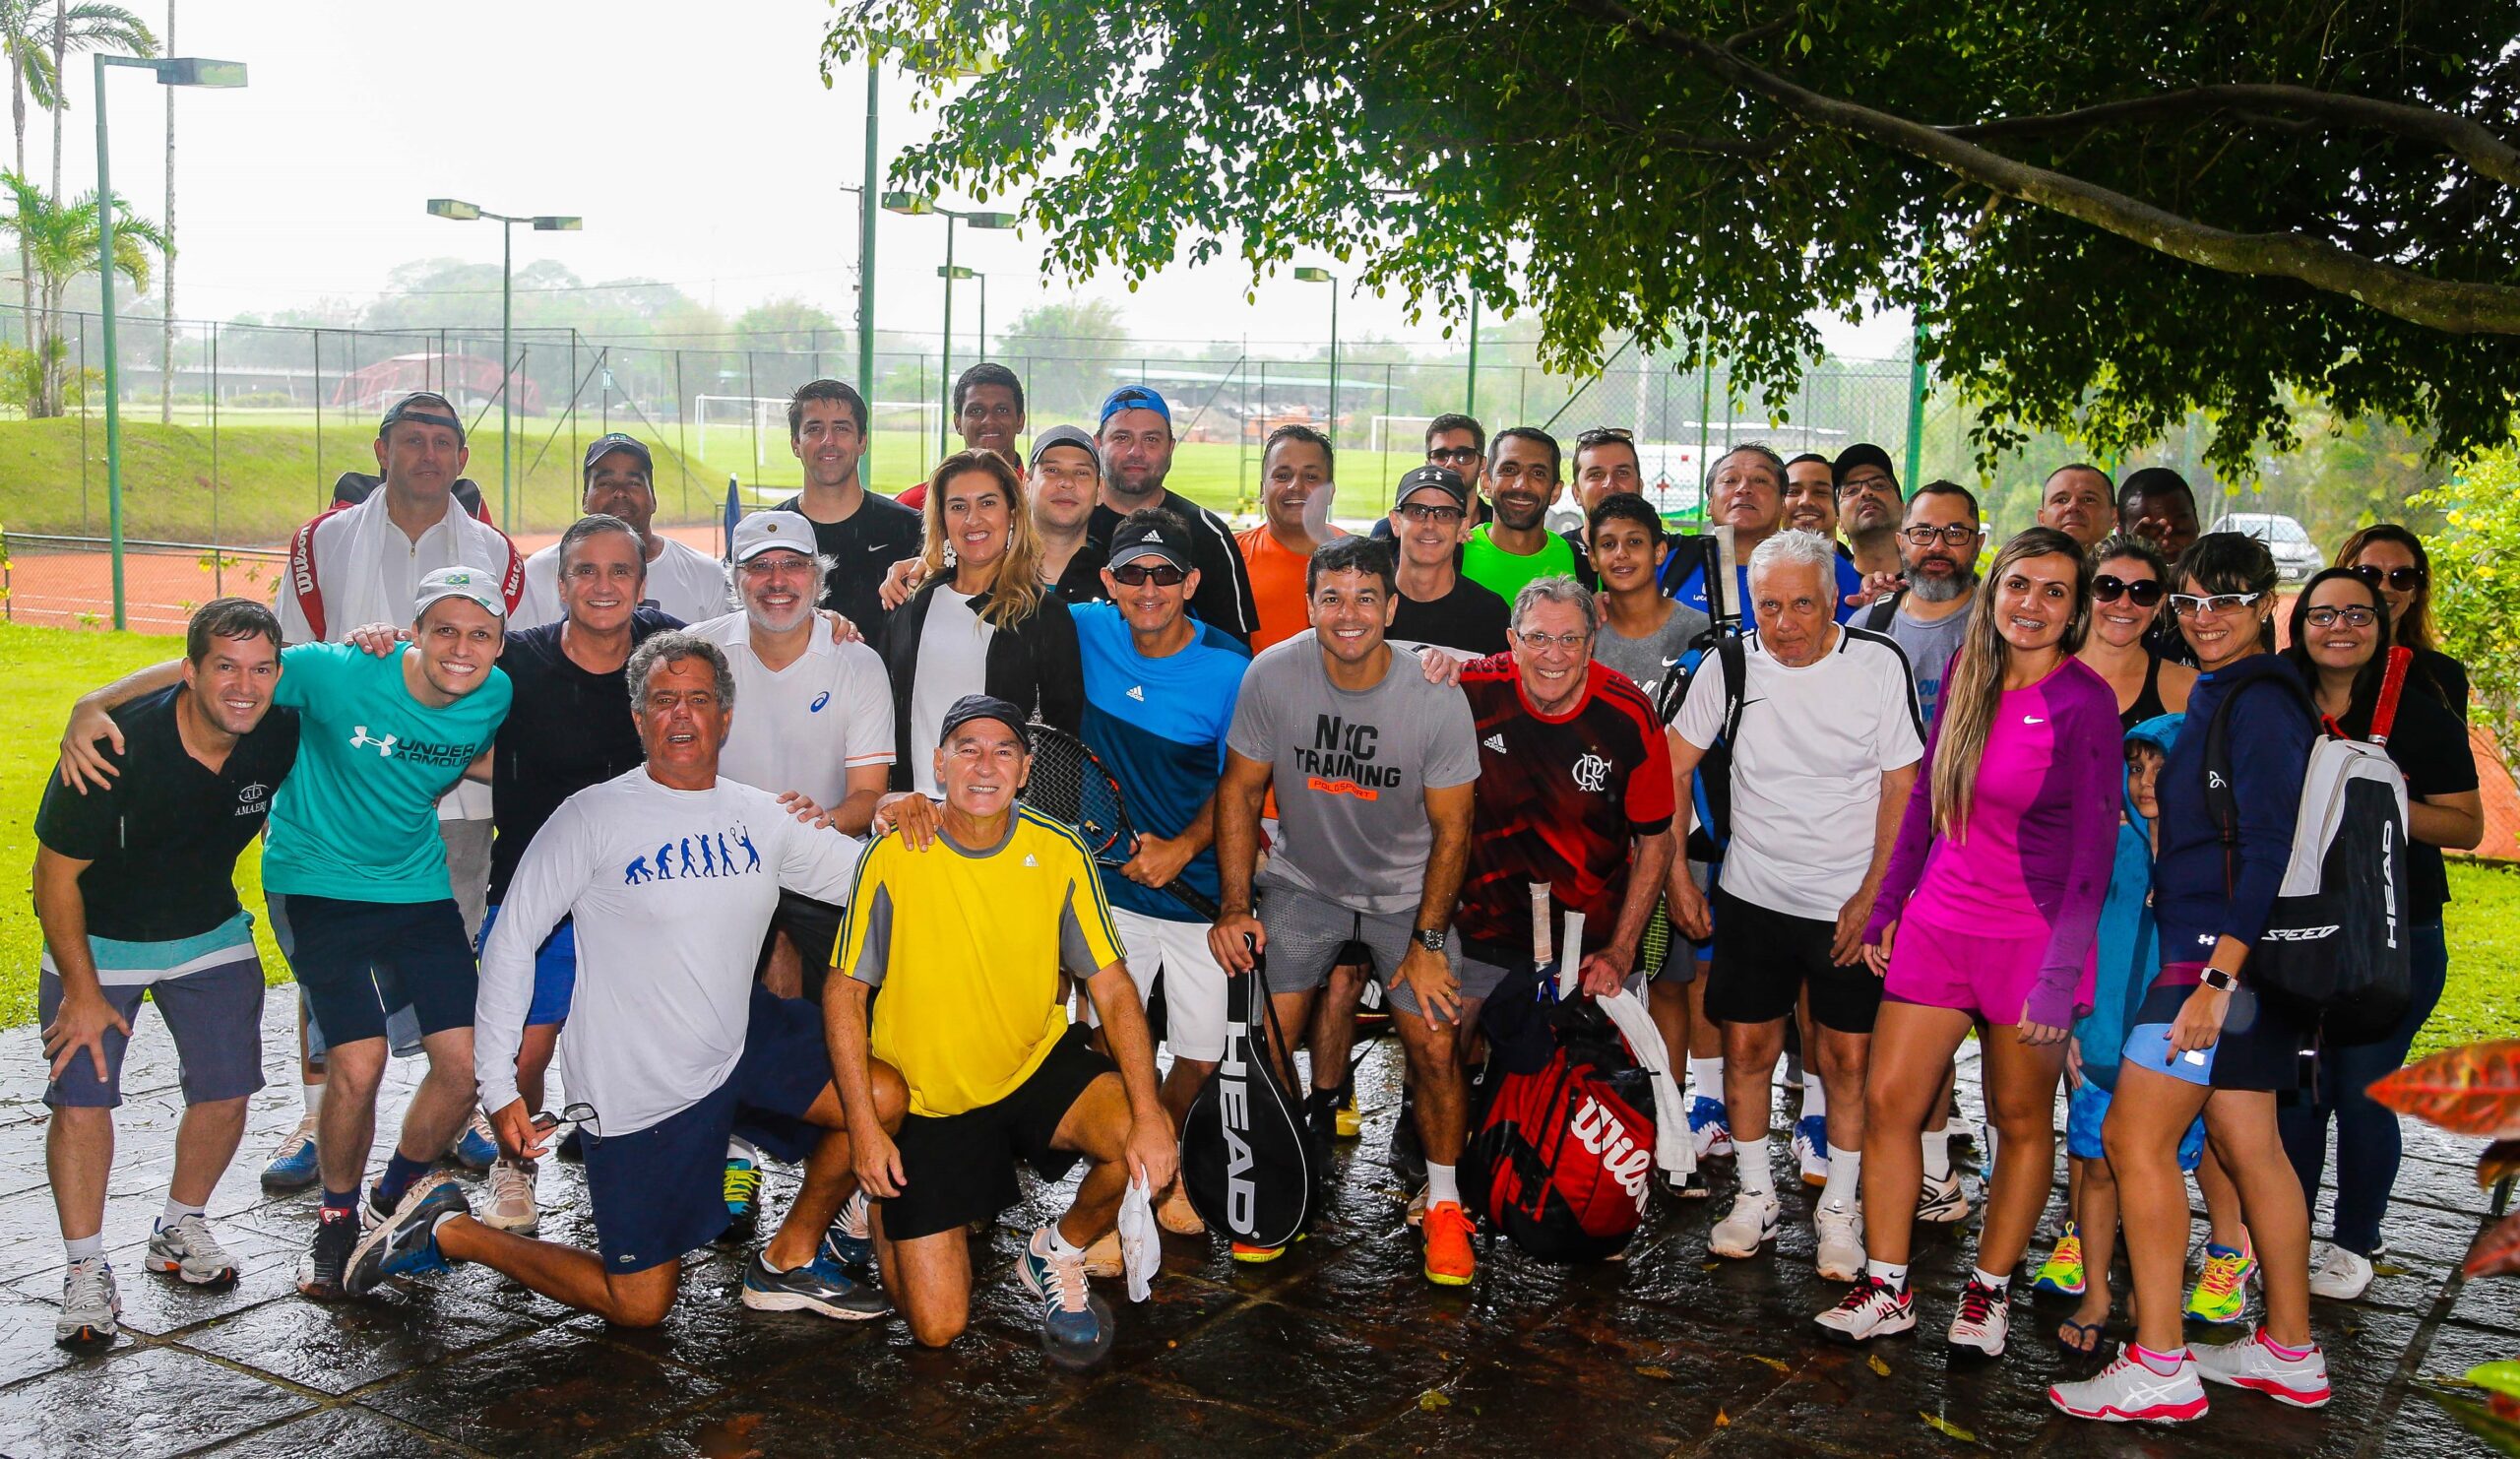 Torneio de Tênis para associados e familiares será em agosto – AMPERJ